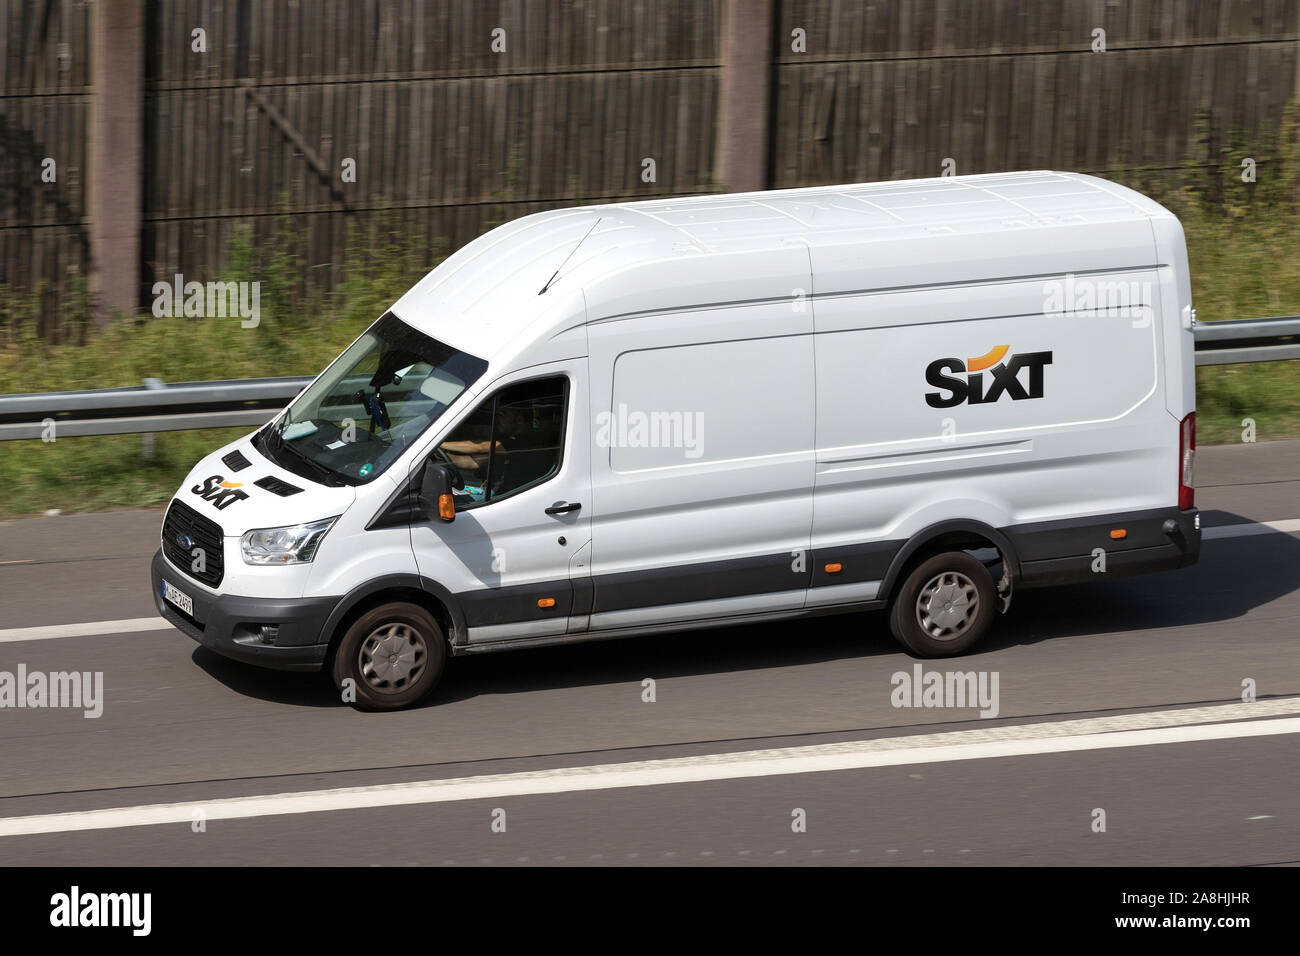 Ford Transit de Sixt sur autoroute. Sixt SE est une compagnie de location de voiture multinationale européenne avec environ 4 000 emplacements dans plus de 100 pays. Banque D'Images